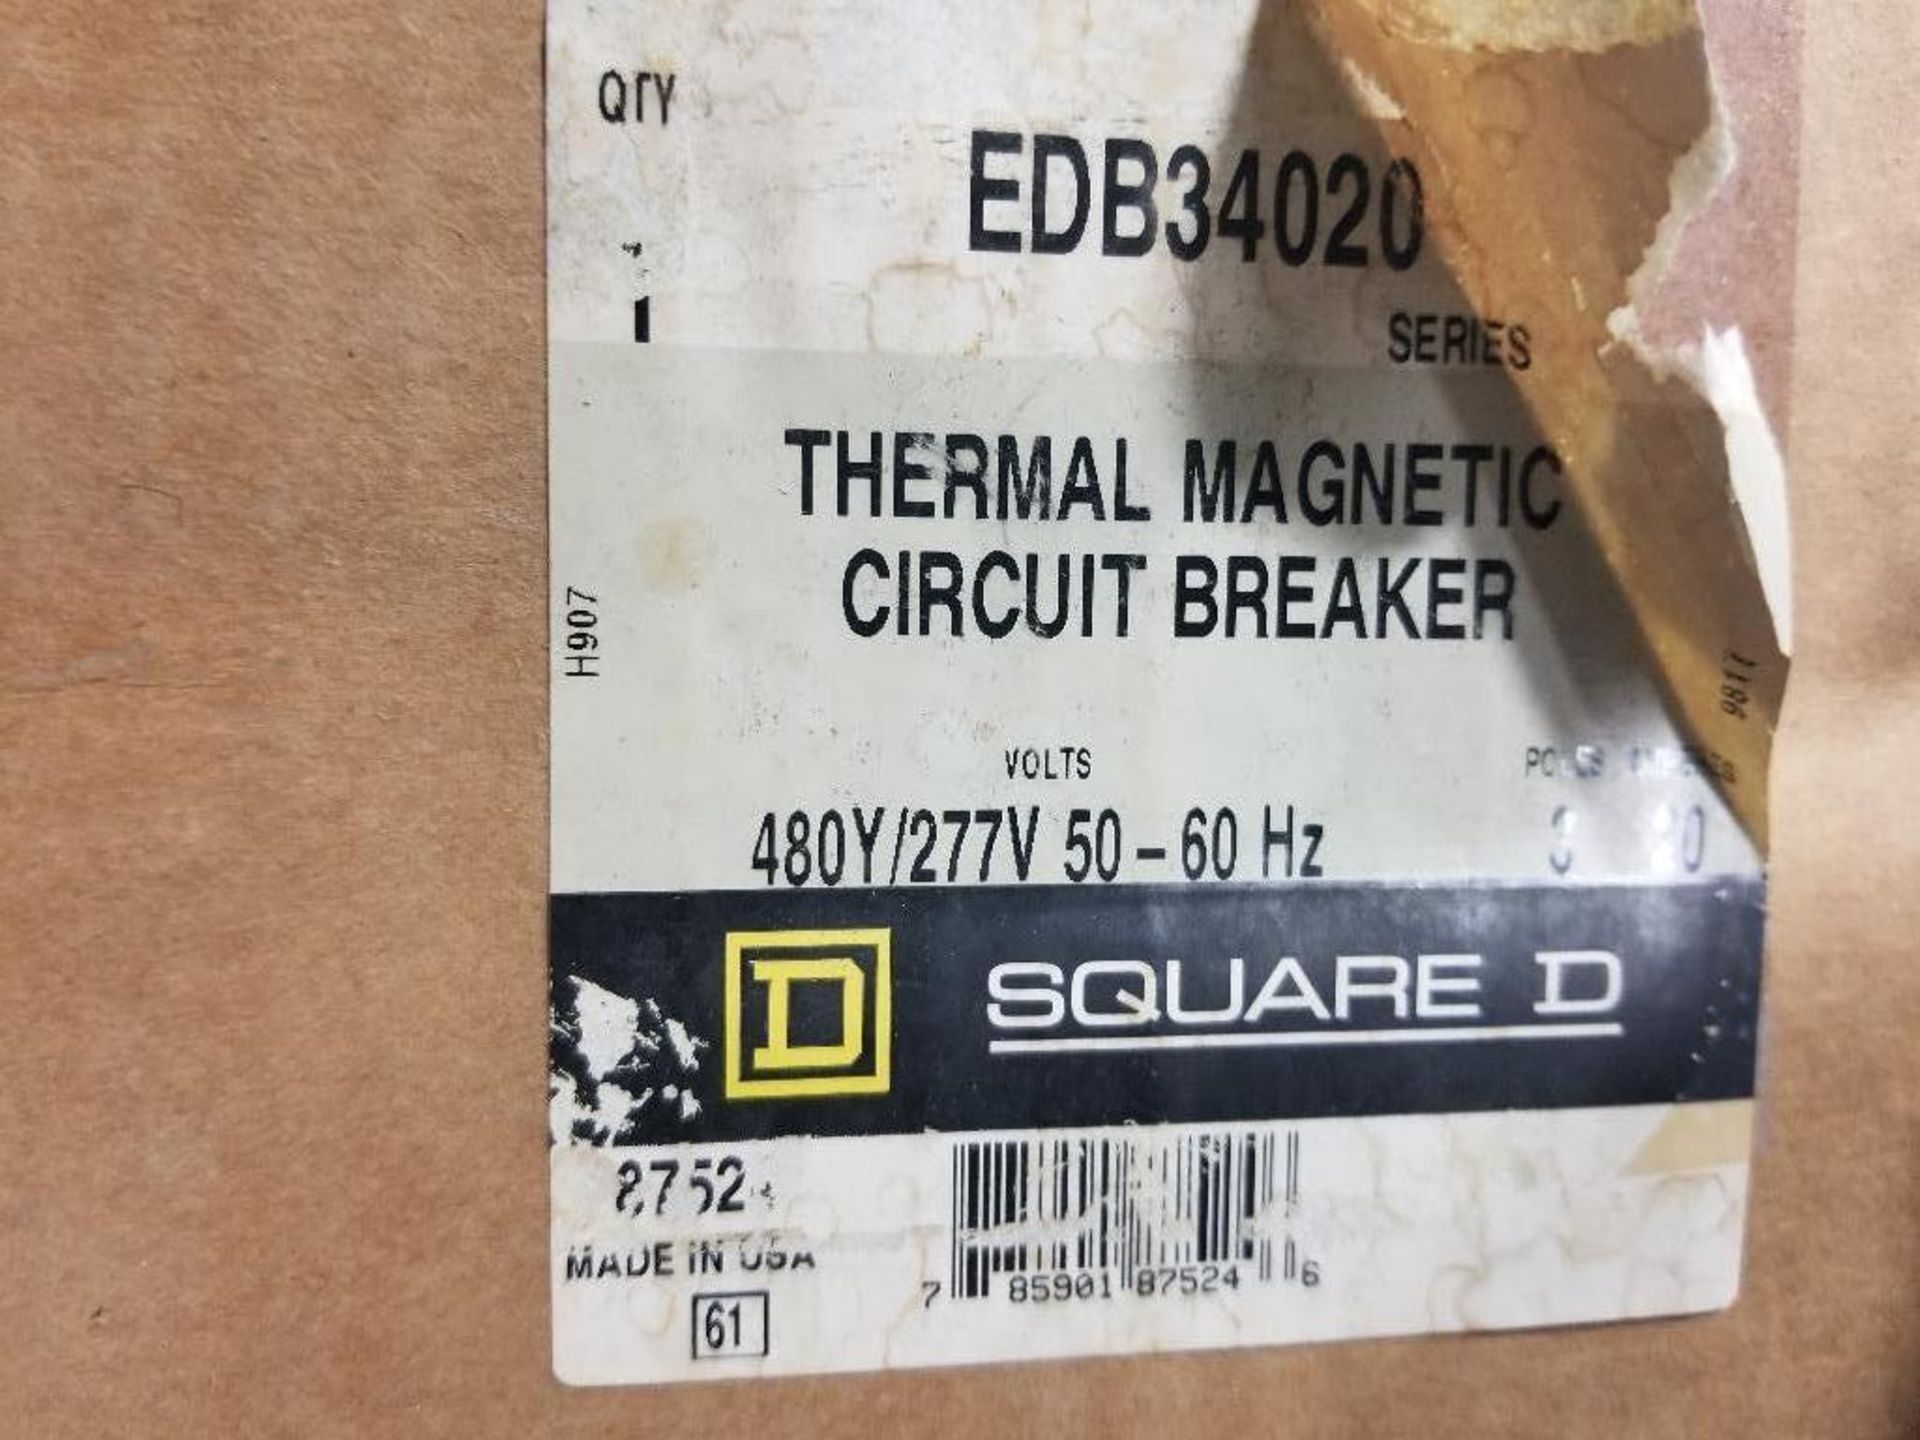 Square D thermal magnetic breaker. Model EDB34020. New in box. - Image 3 of 3